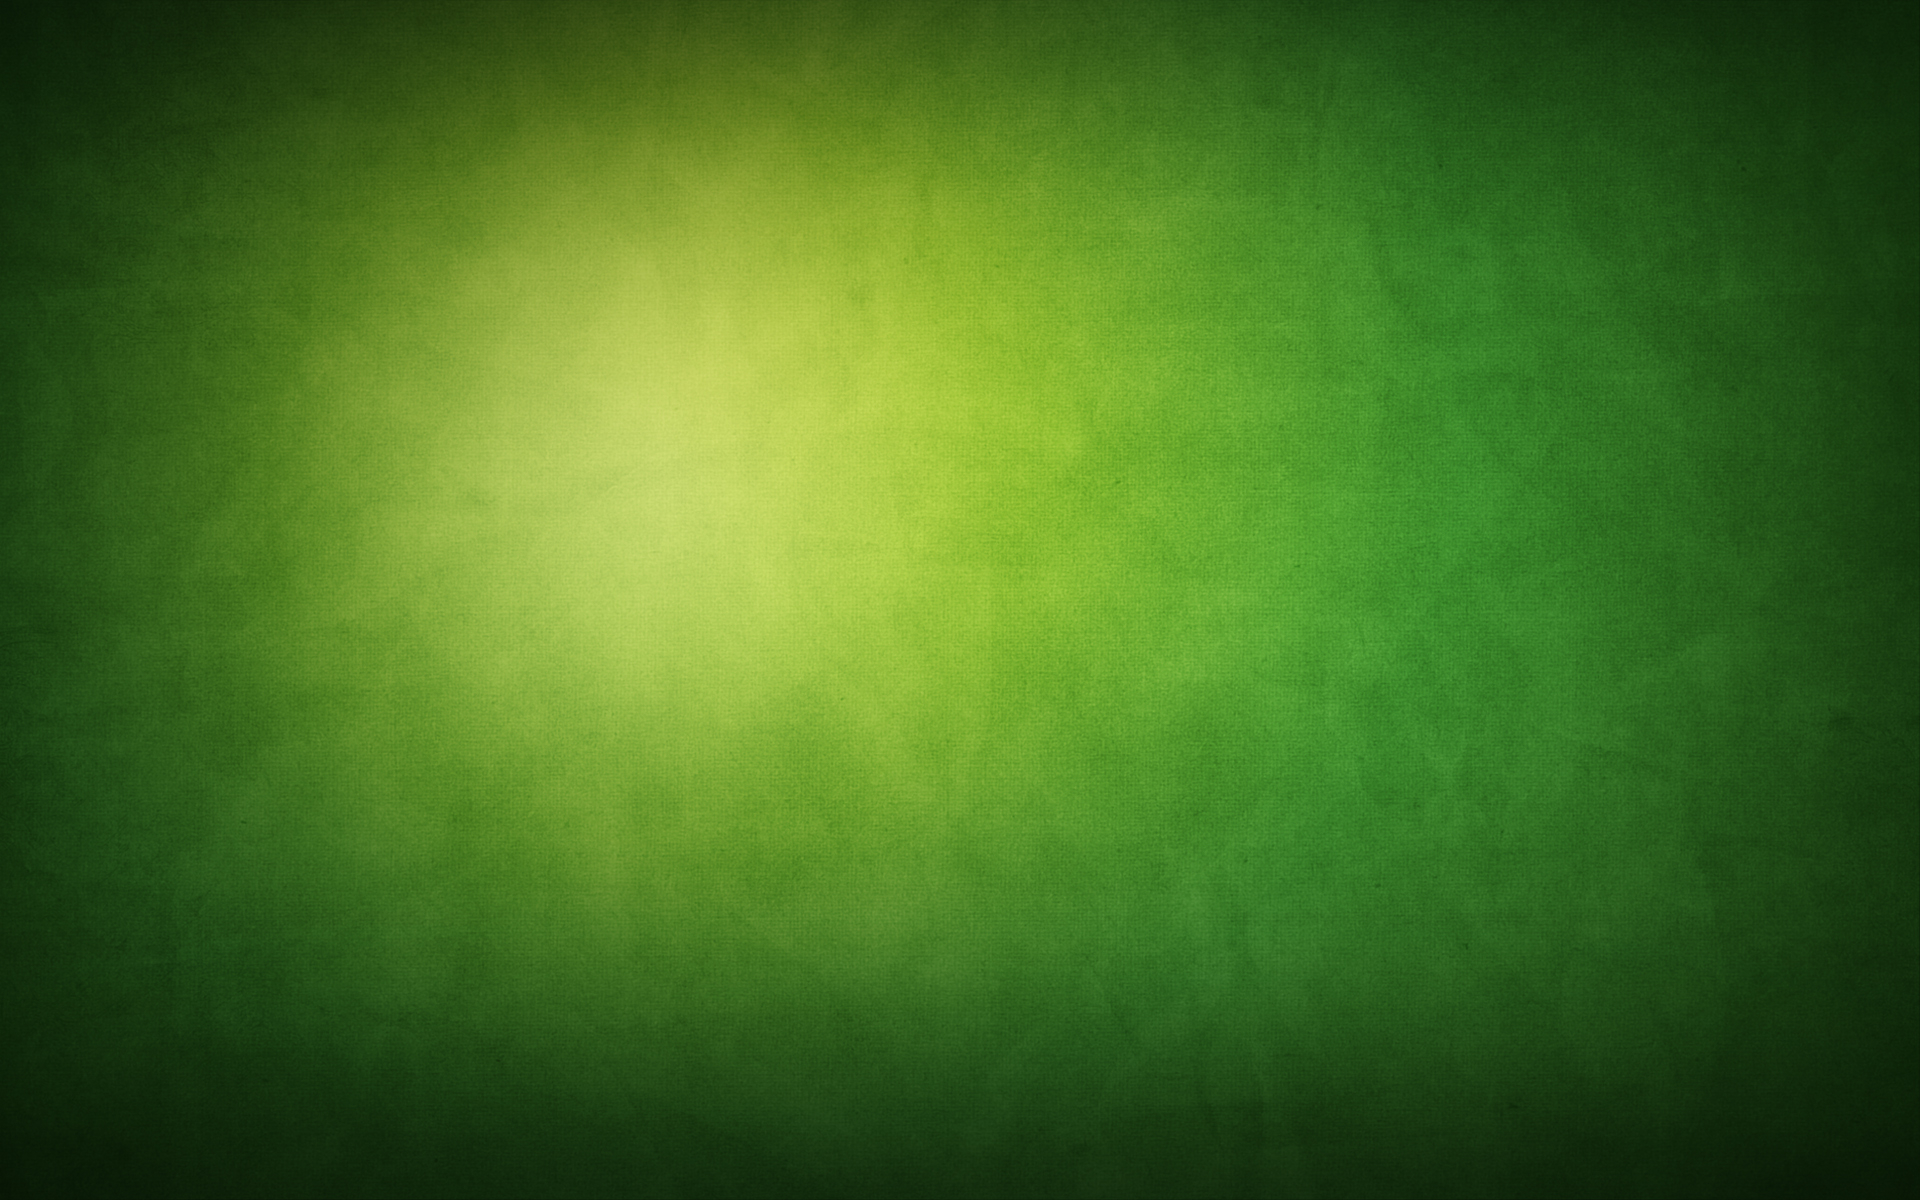 Green Background Wallpaper Download sẽ đem lại cho bạn cảm giác yên tĩnh và bình an trên màn hình máy tính của bạn. Hãy cập nhật ngay những hình nền xanh này để trang trí màn hình phù hợp với sở thích của bạn.